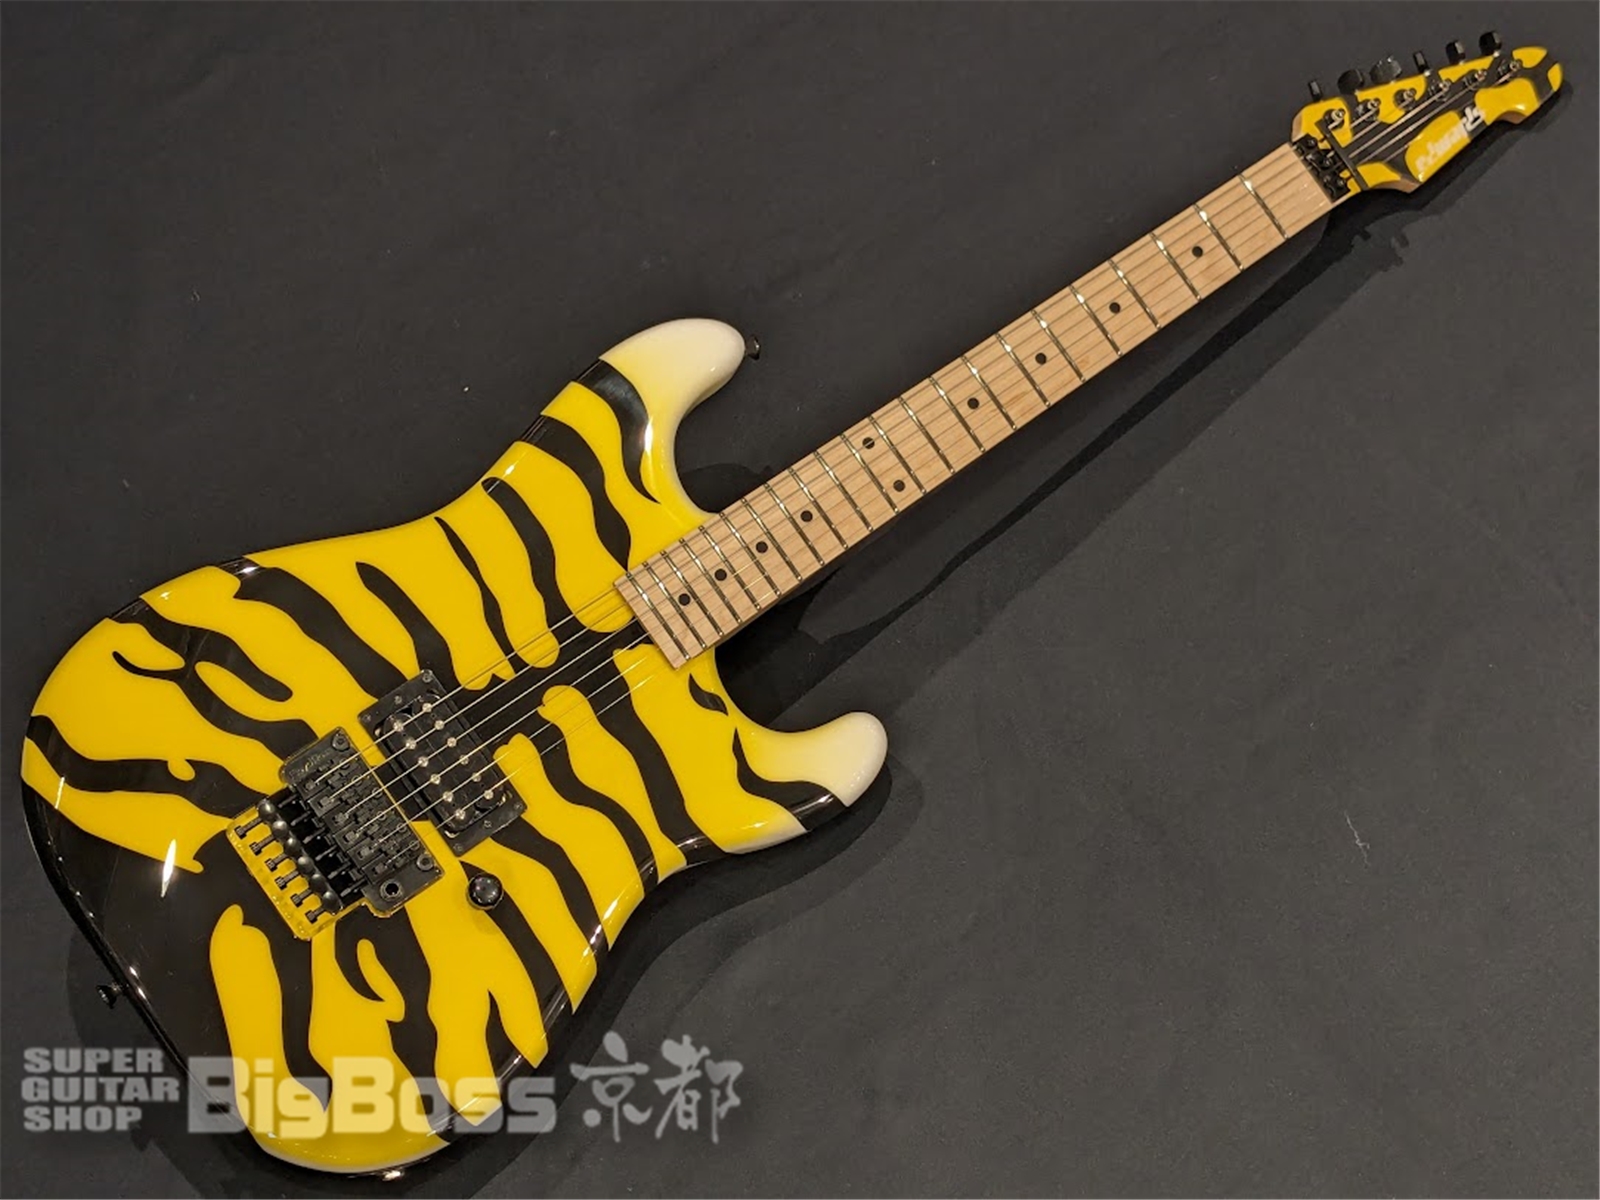 【即納可能】EDWARDS(エドワーズ) E-YELLOW TIGER / Yellow Tiger Graphic 京都店